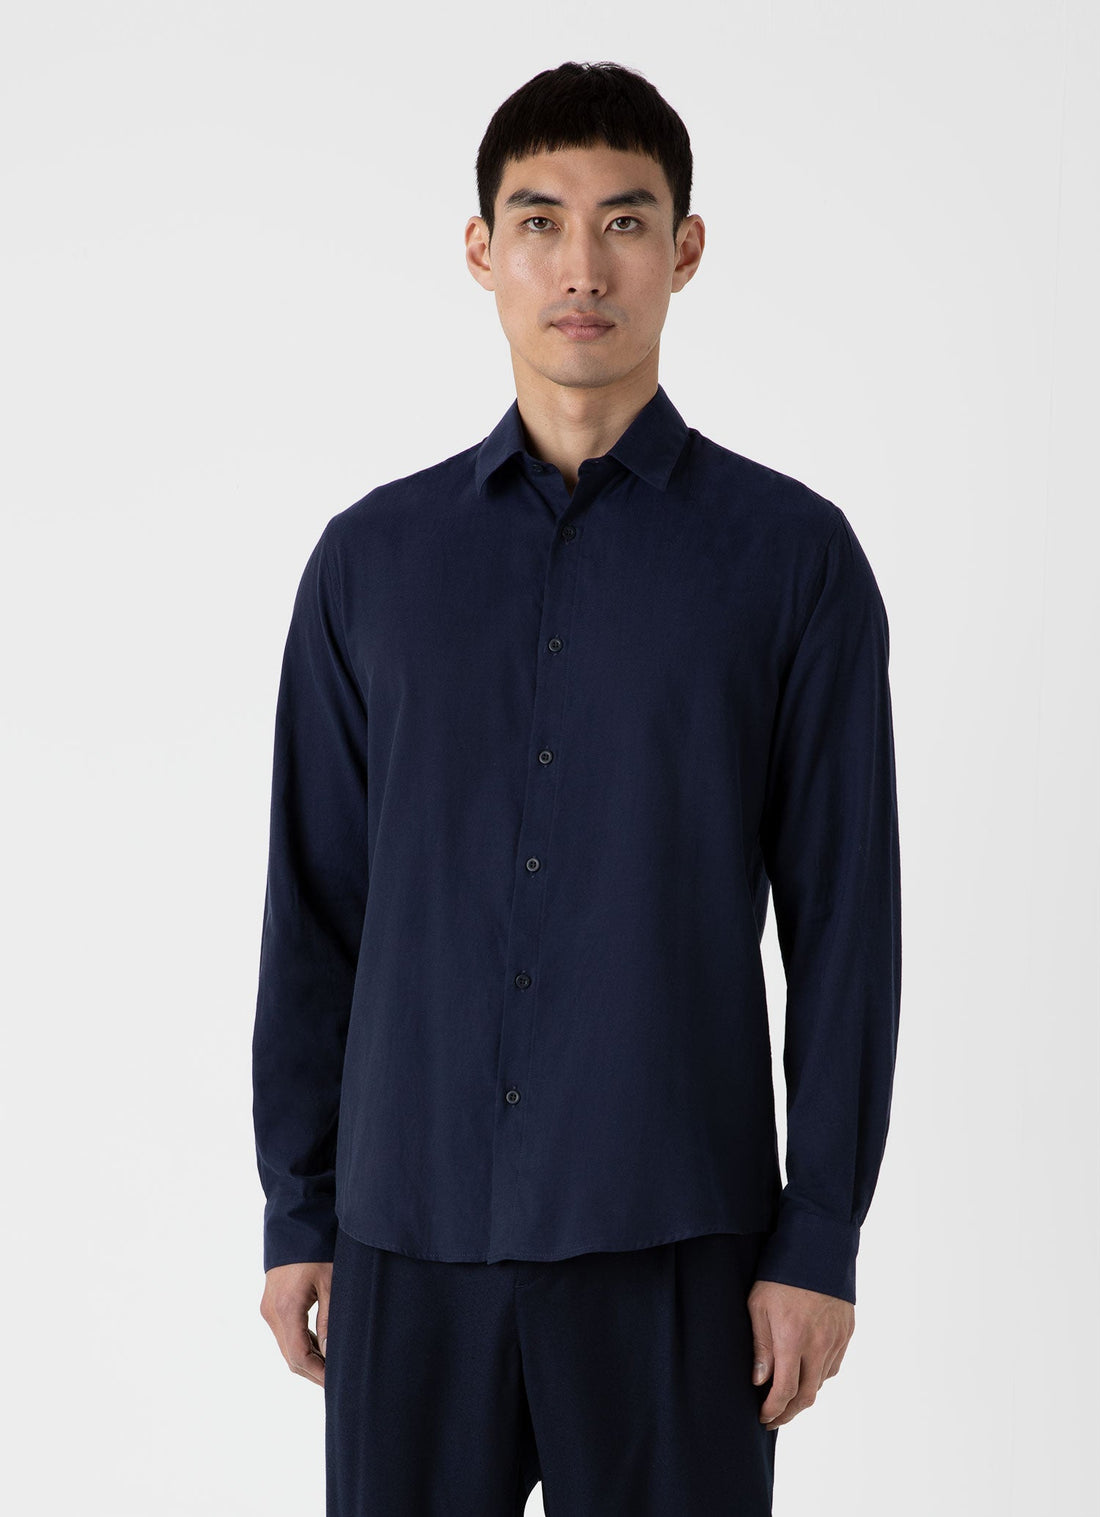 Men's Cotton Flannel Shirt in Navy